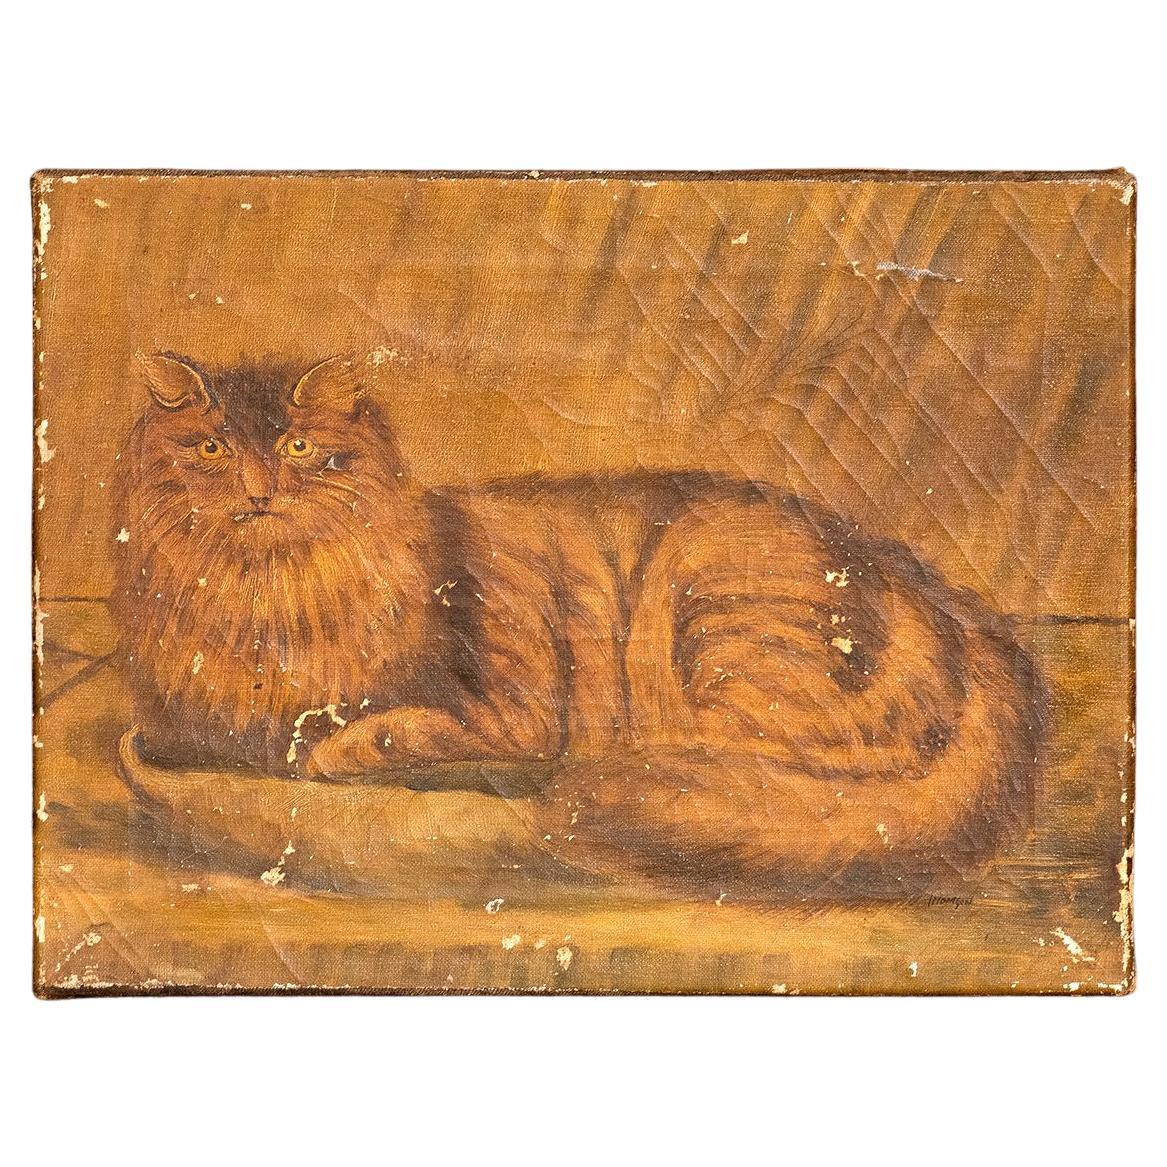 Étude de chat en art populaire naïf, huile sur toile, peinture ancienne du 19e siècle